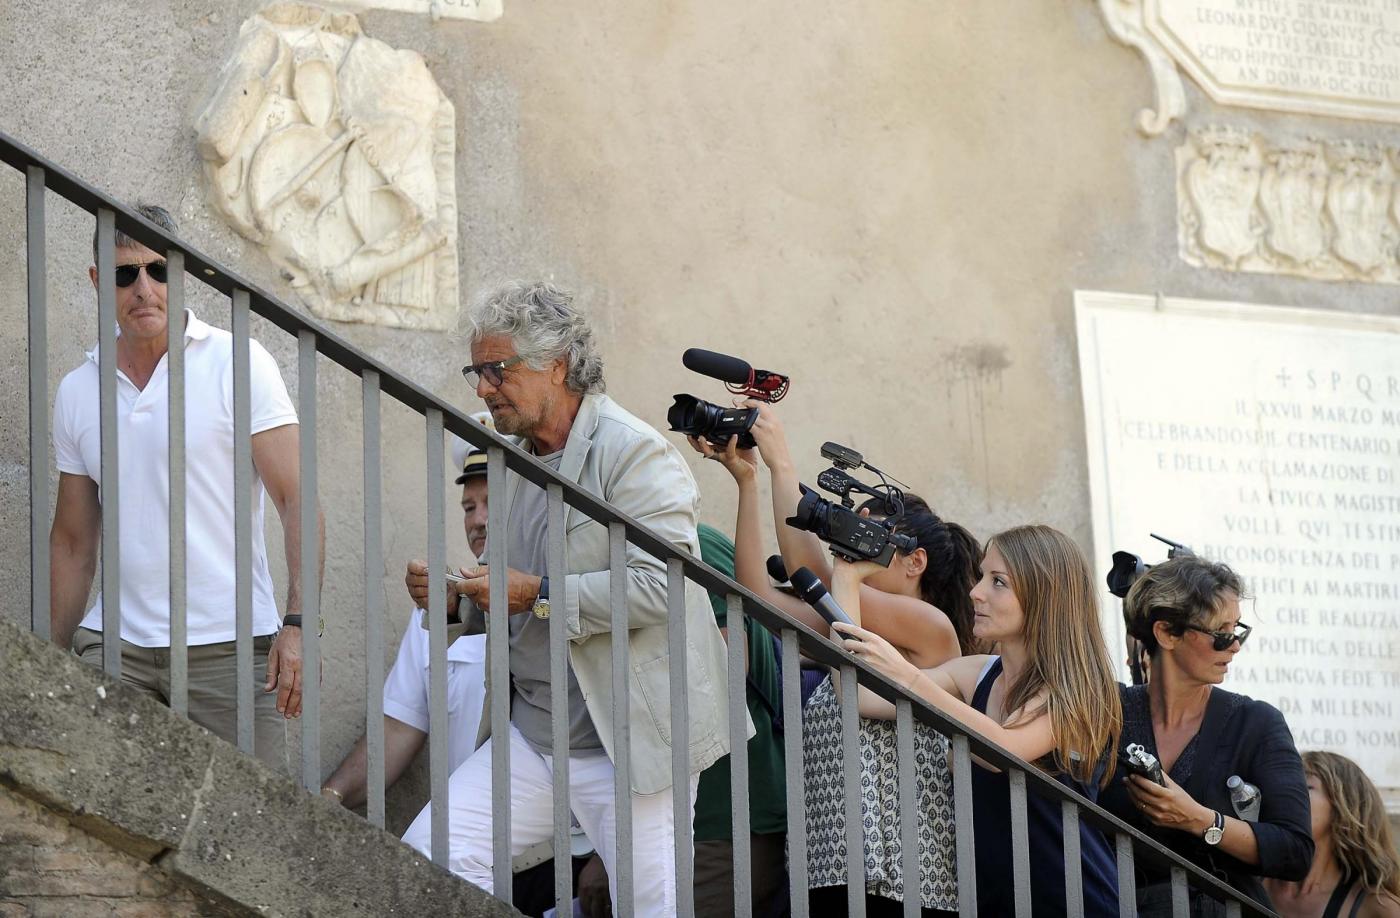 Beppe Grillo in Campidoglio